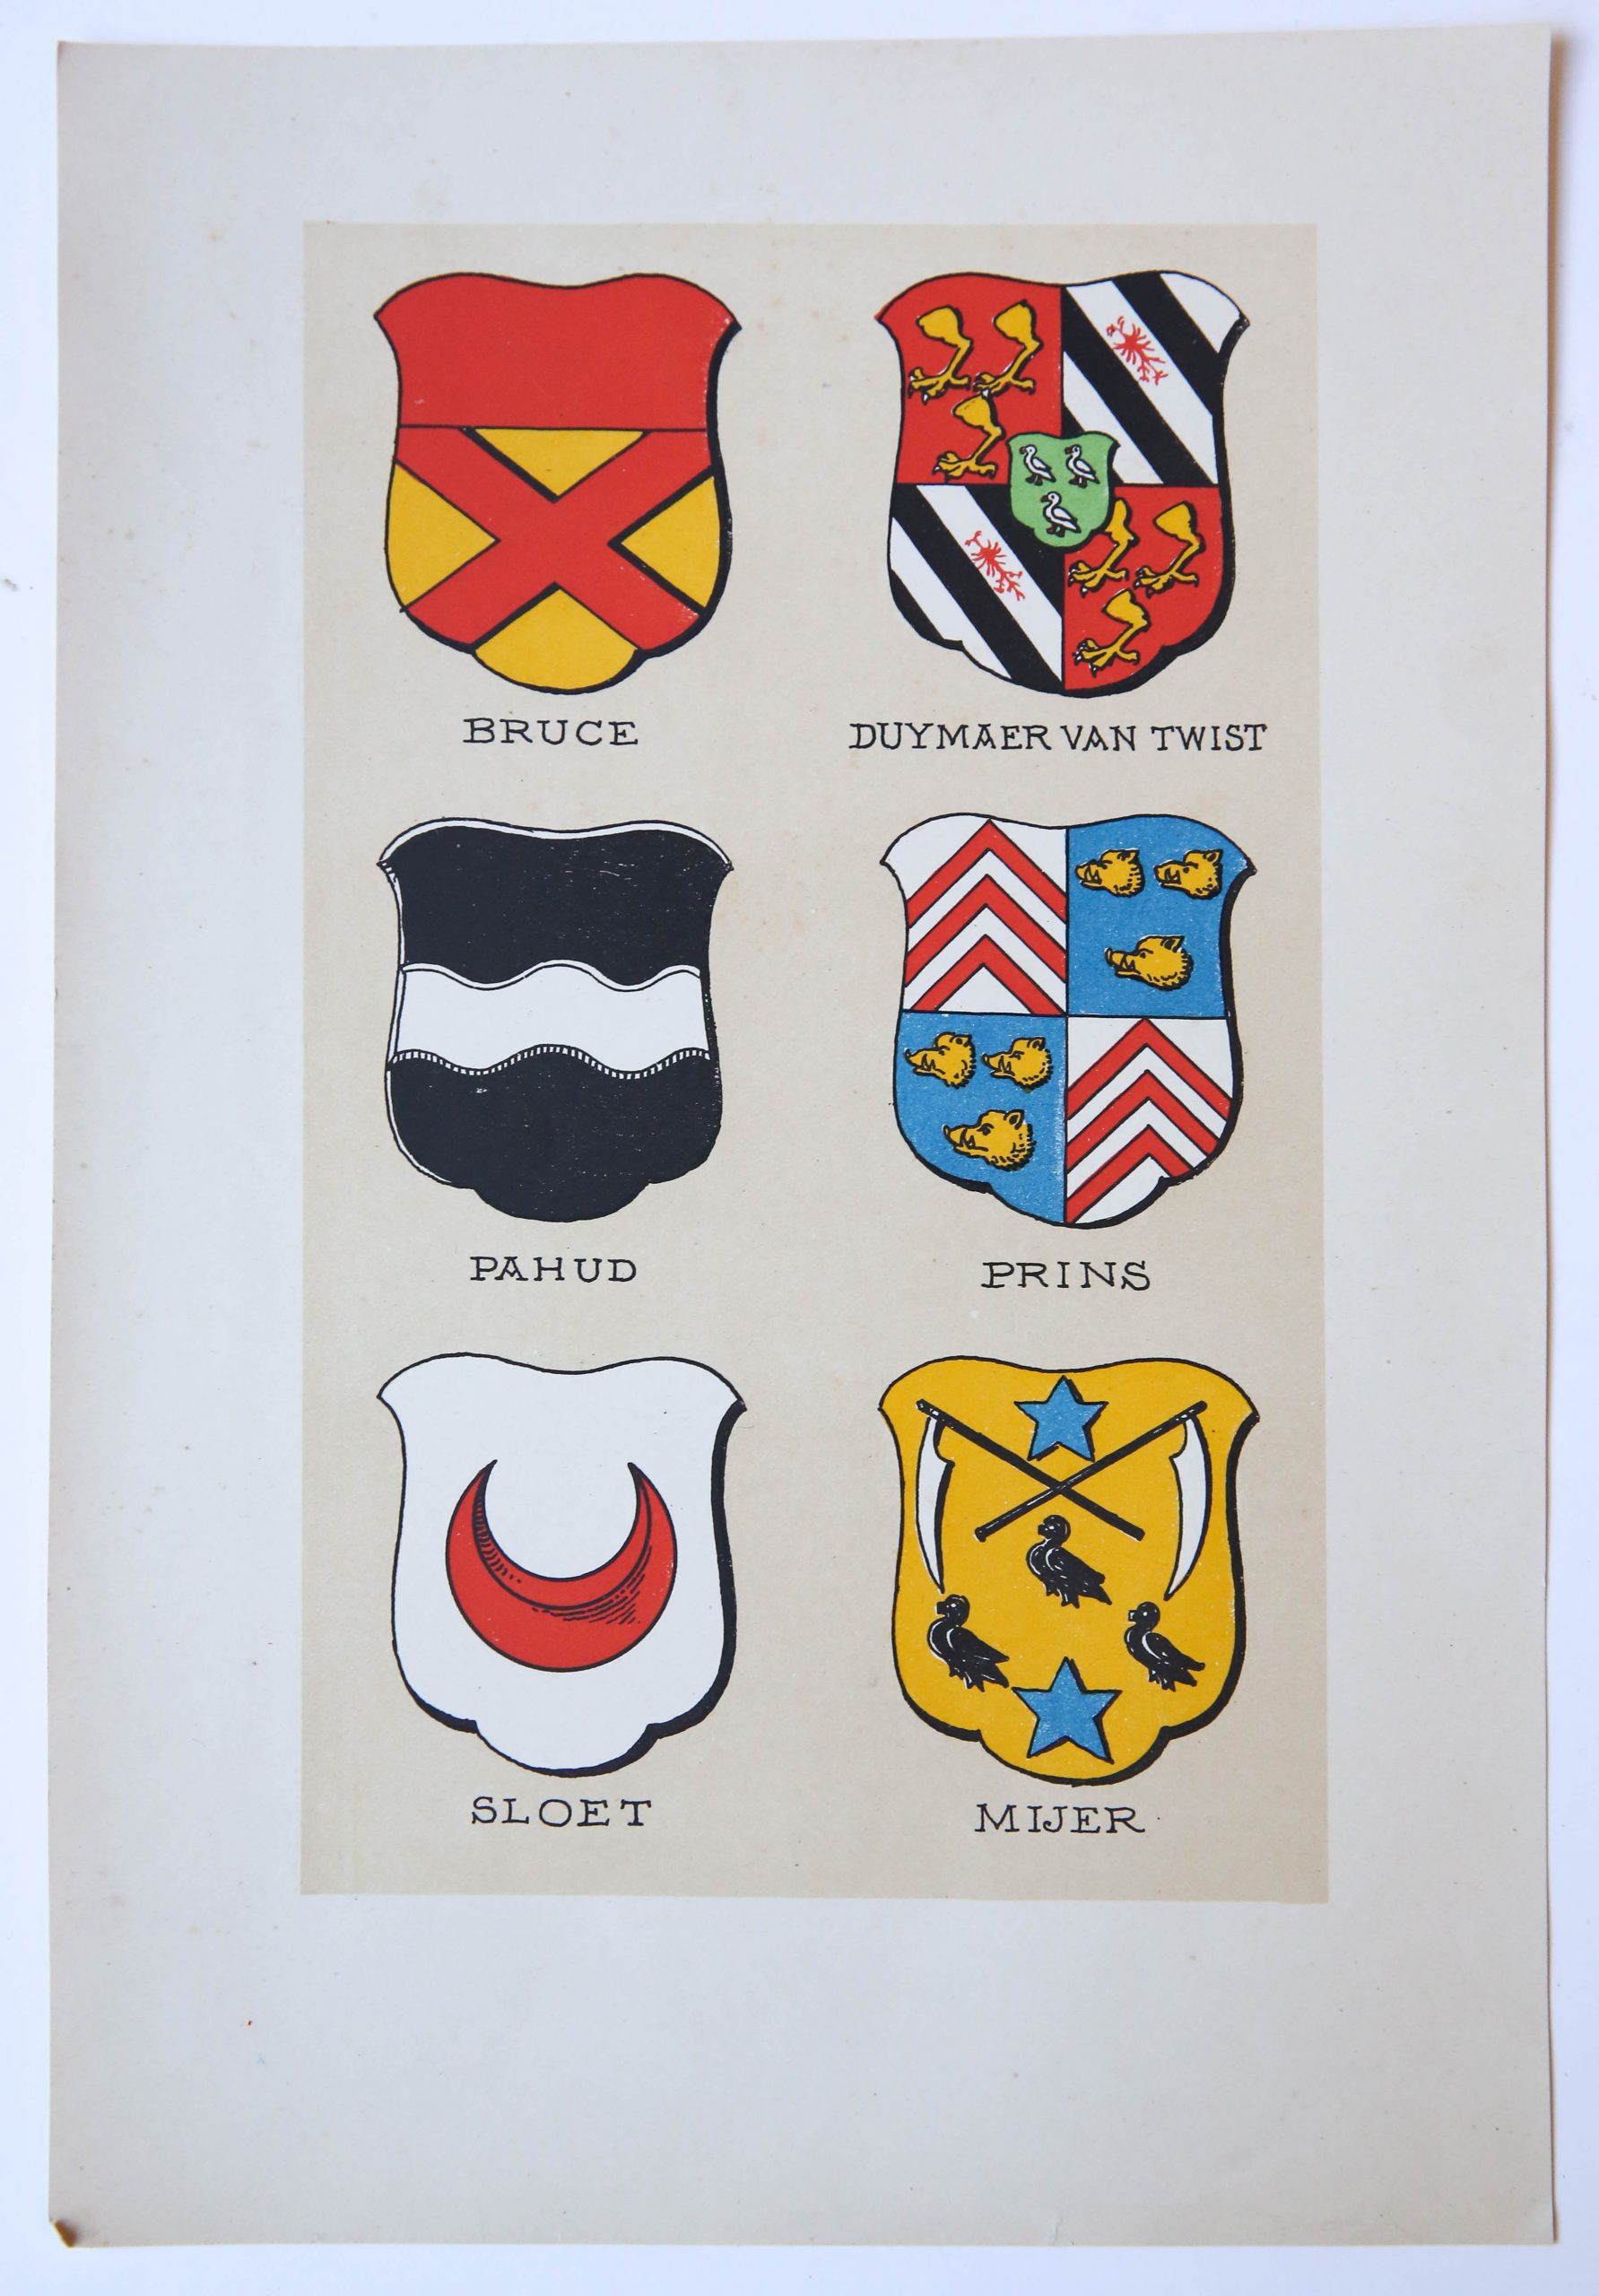 Wapenkaart/Coat of Arms Bruce, Dymaer van Twist, Pahud, Prins, Sloet en Mijer.